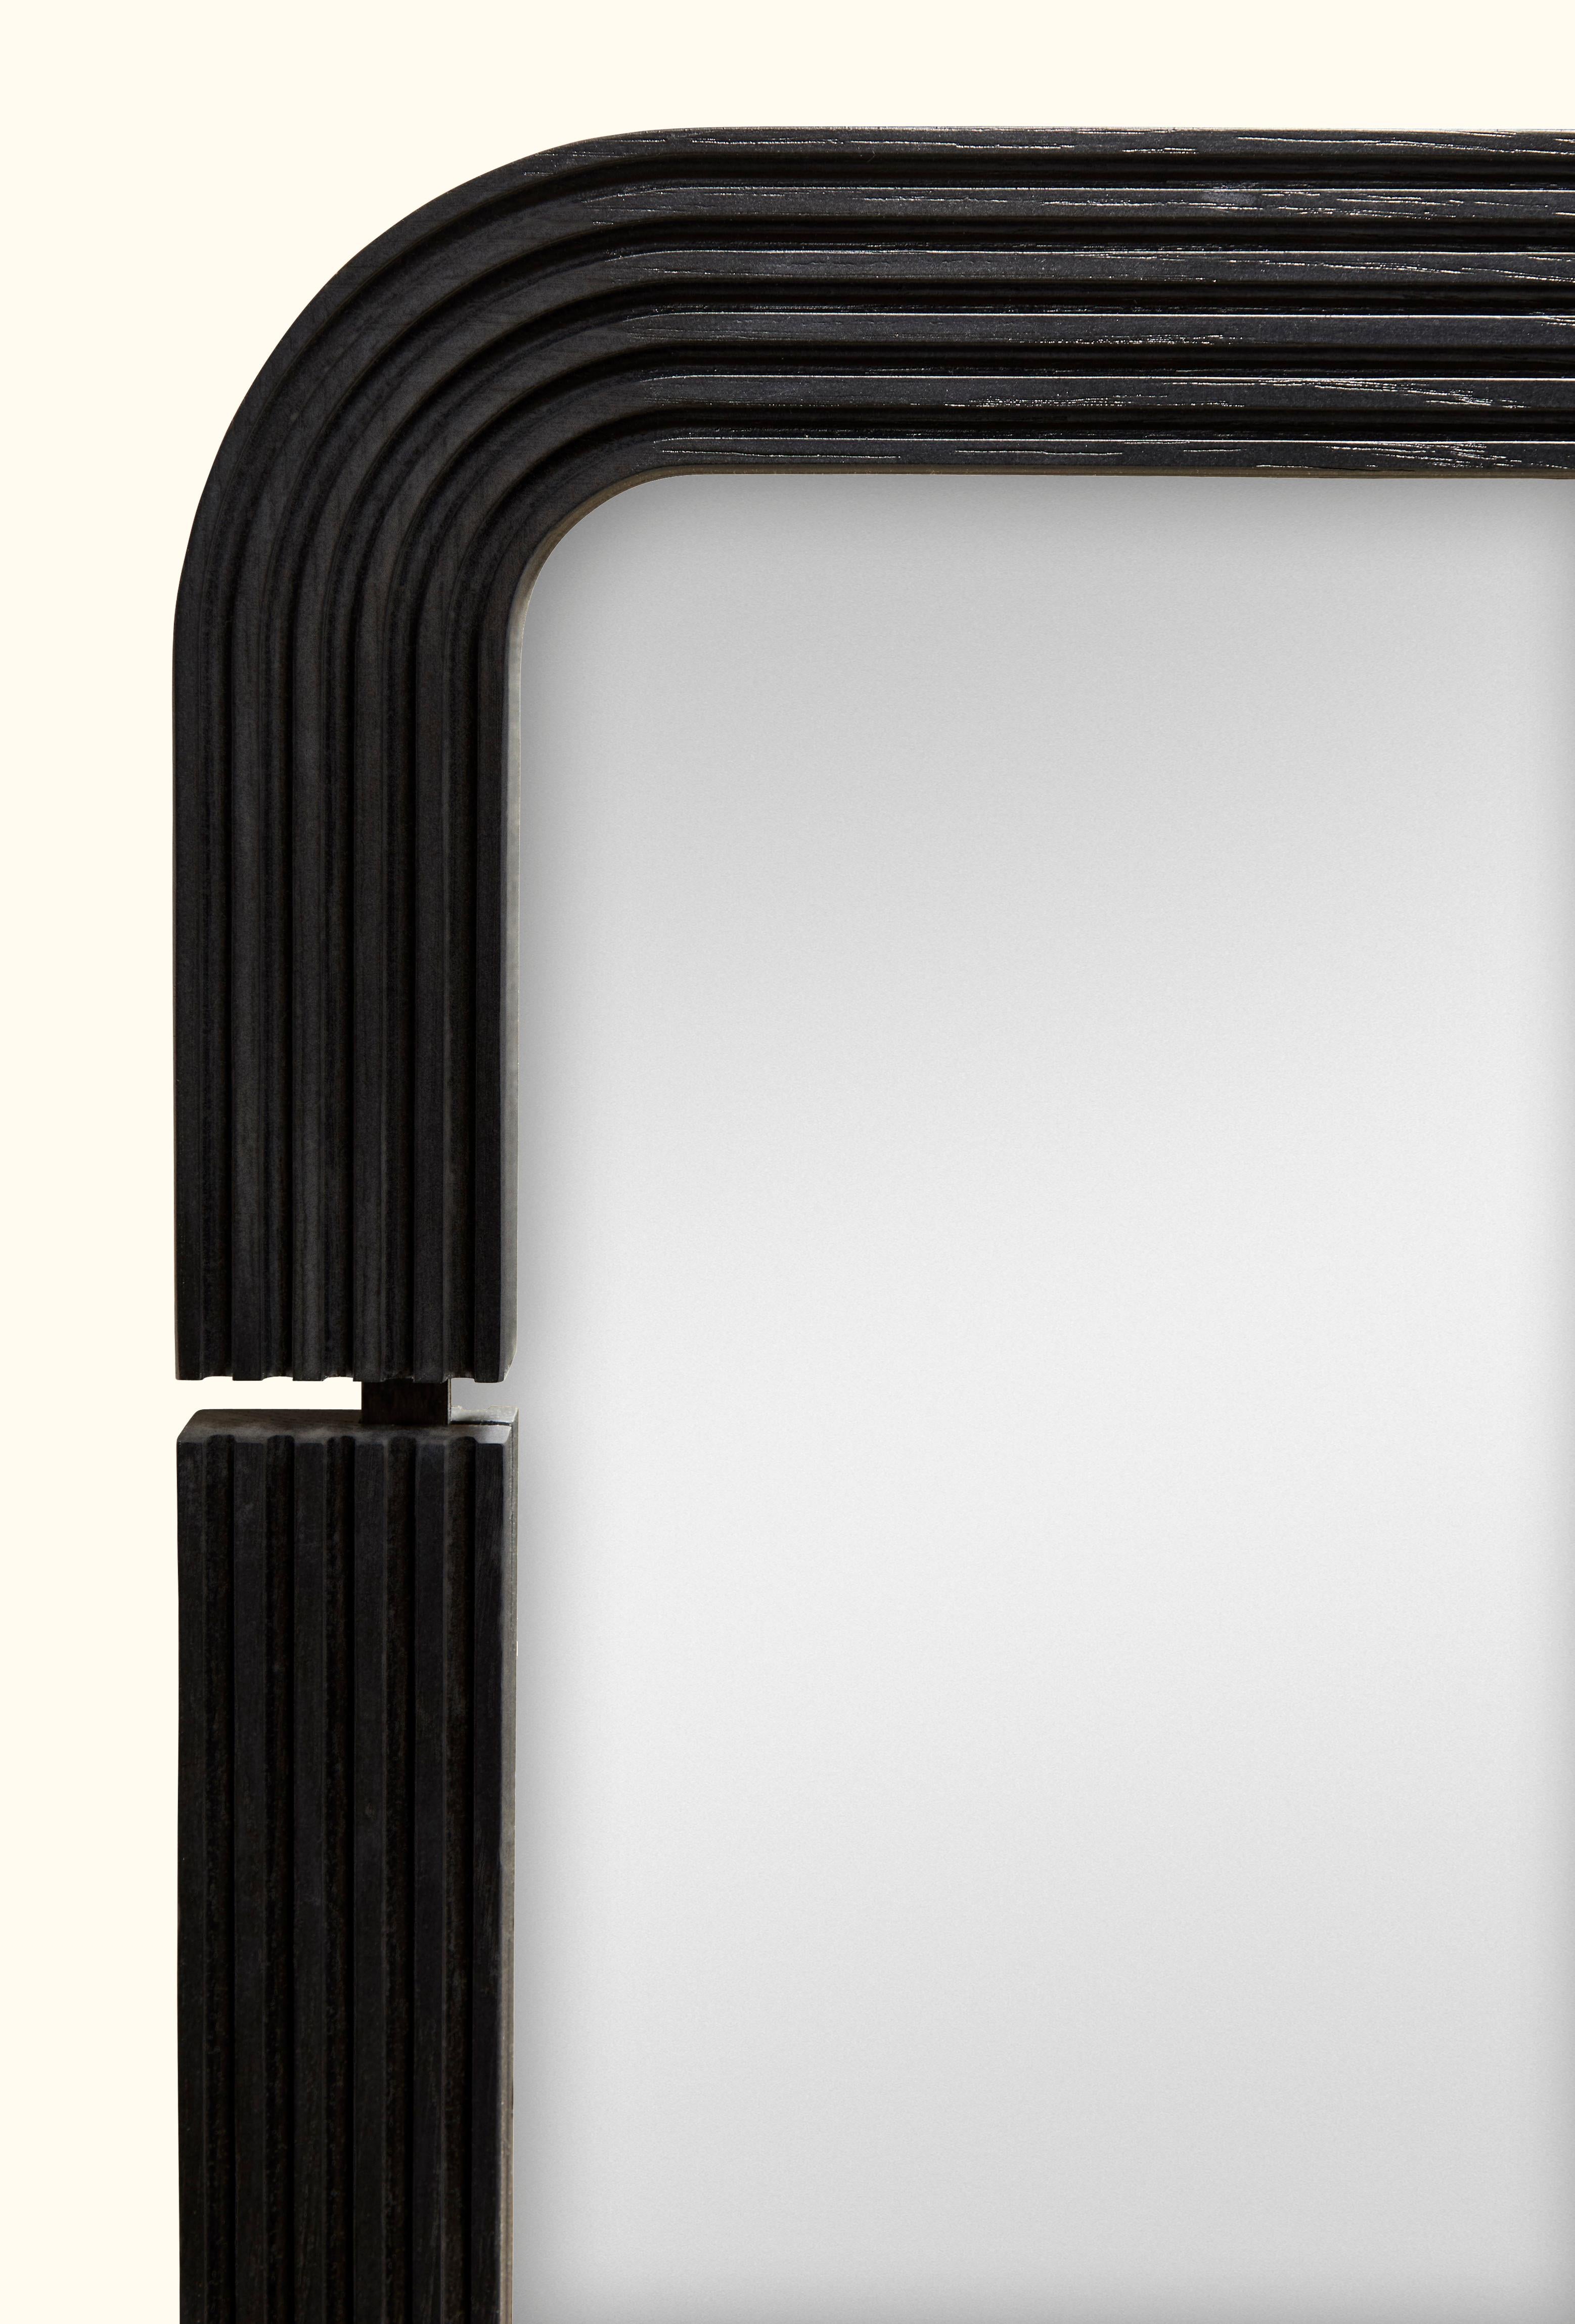 Mid-Century Modern Ebonized Oak Ojai Mirror by Lawson-Fenning